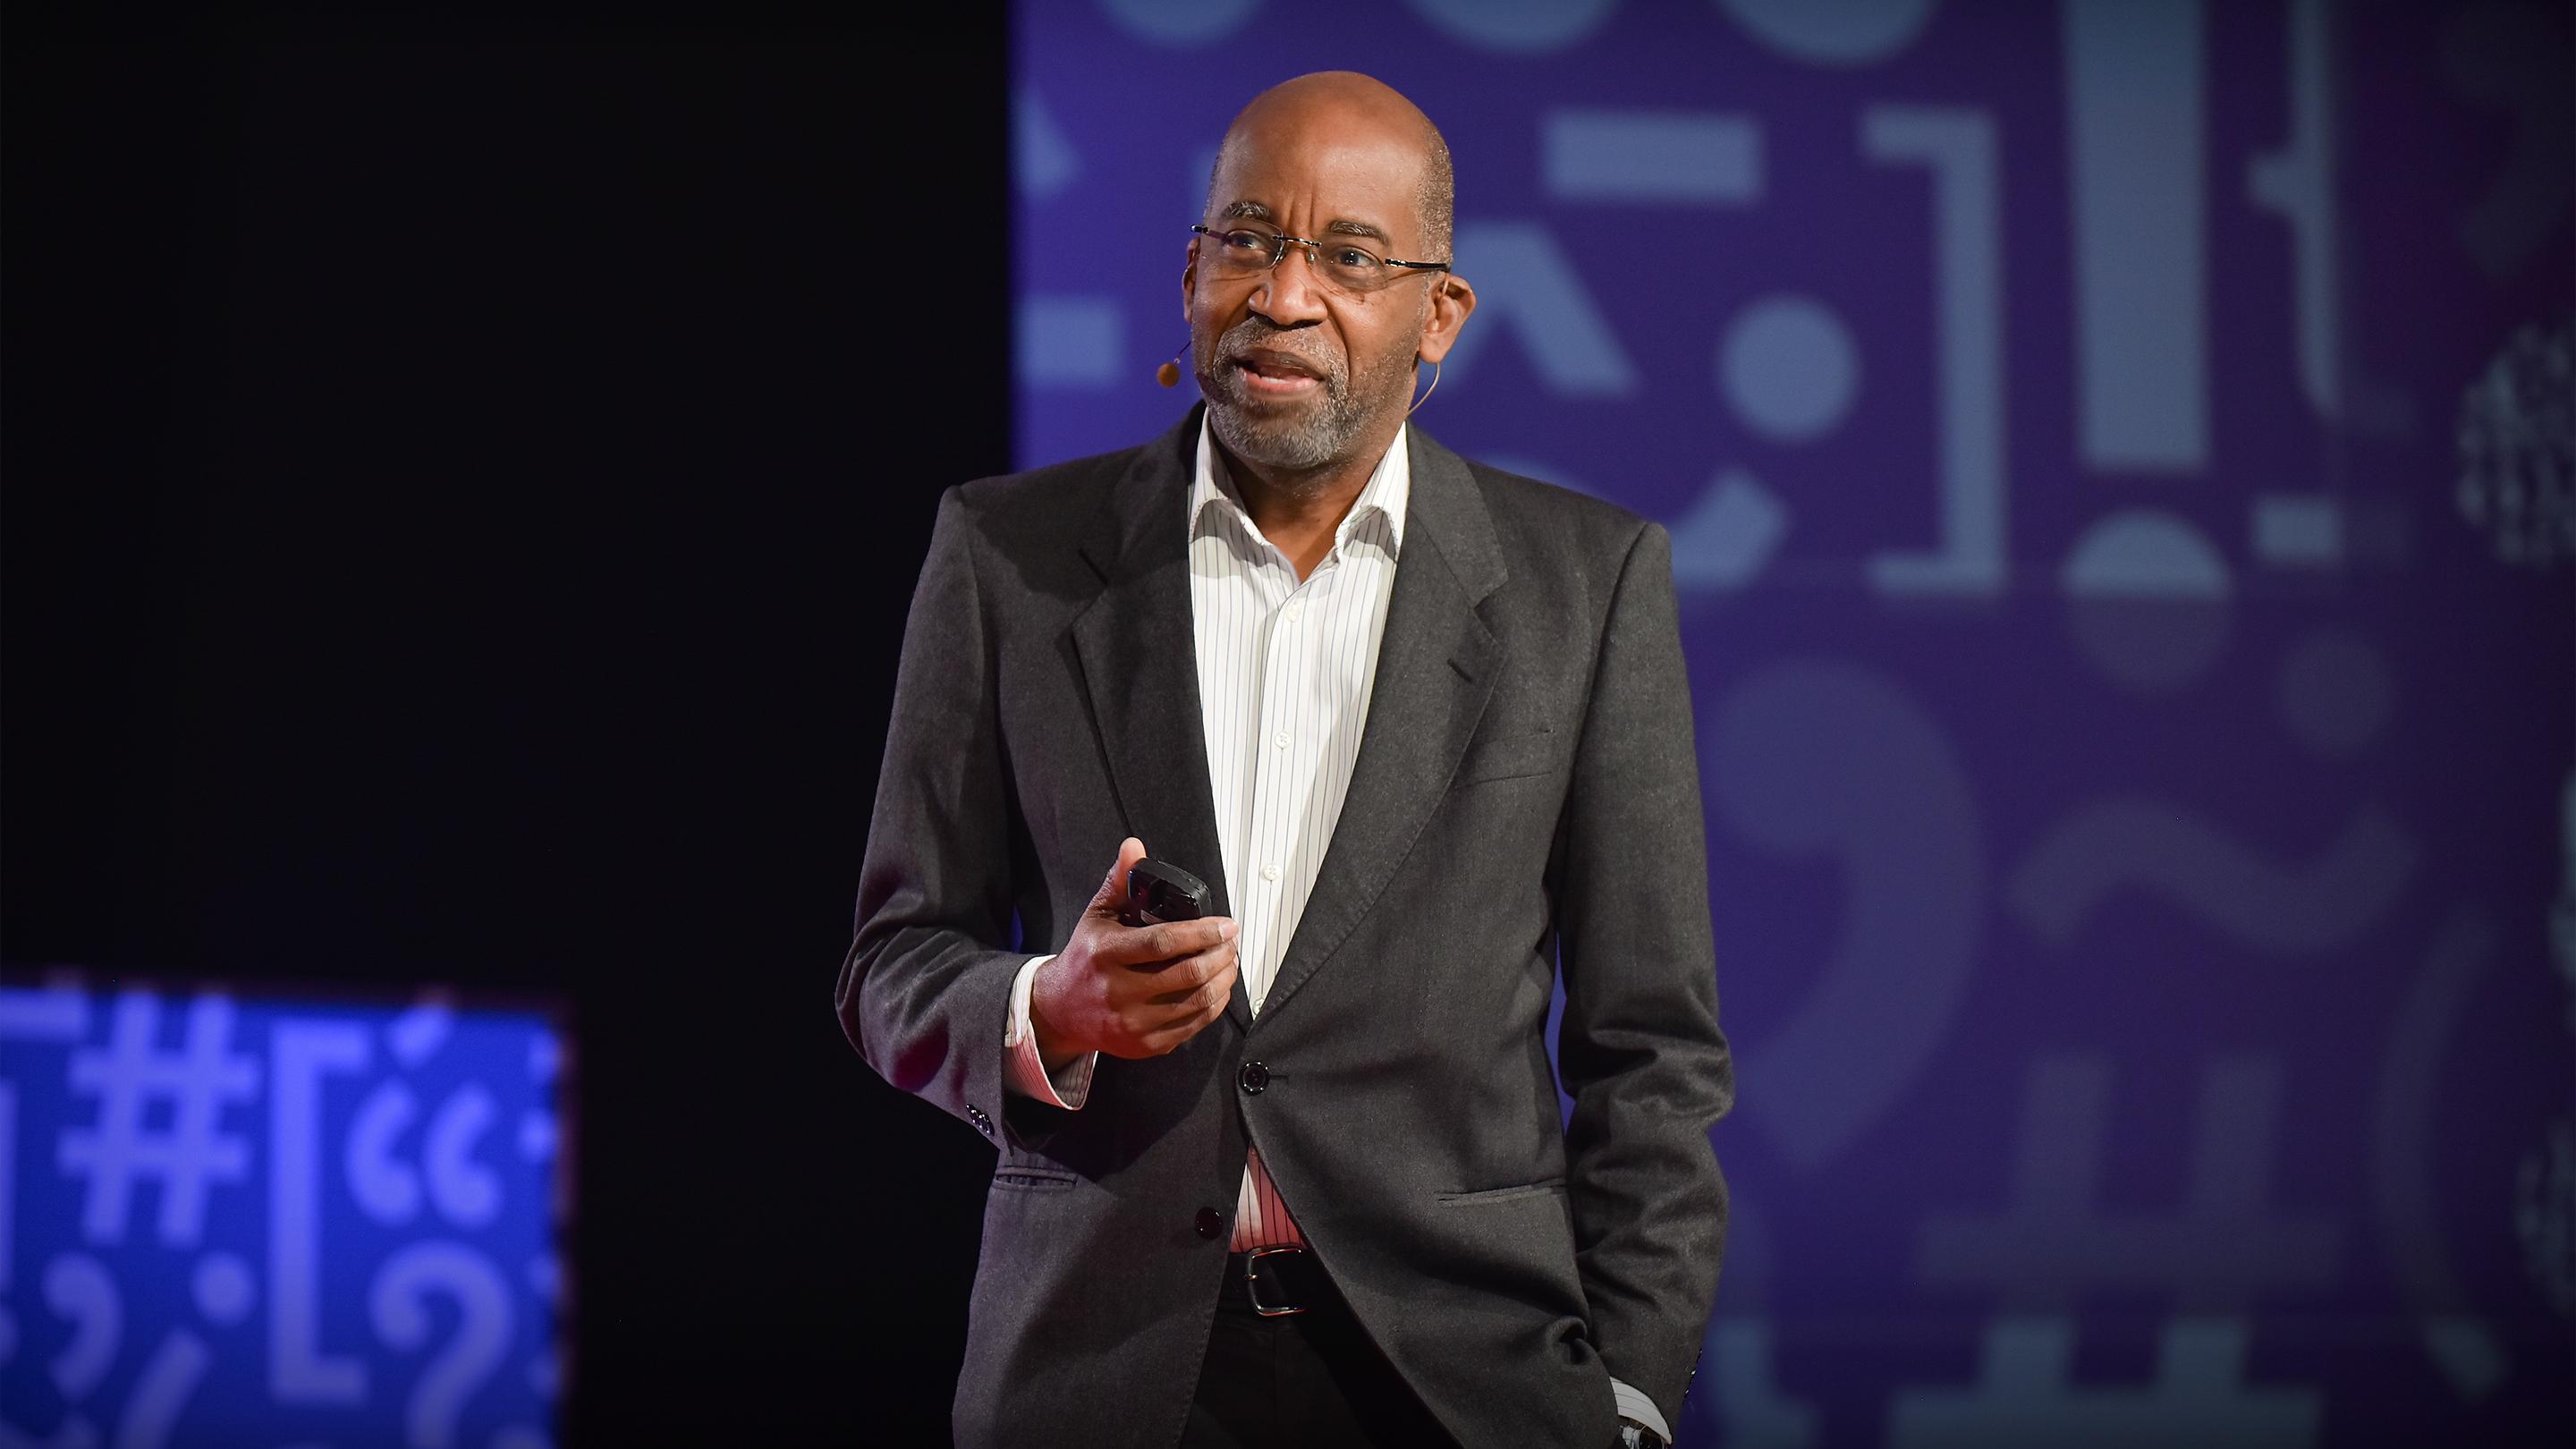 デイヴィッド・R・ウィリアムズ: 人種差別はなぜ黒人の健康を阻害するのか？ | TED Talk